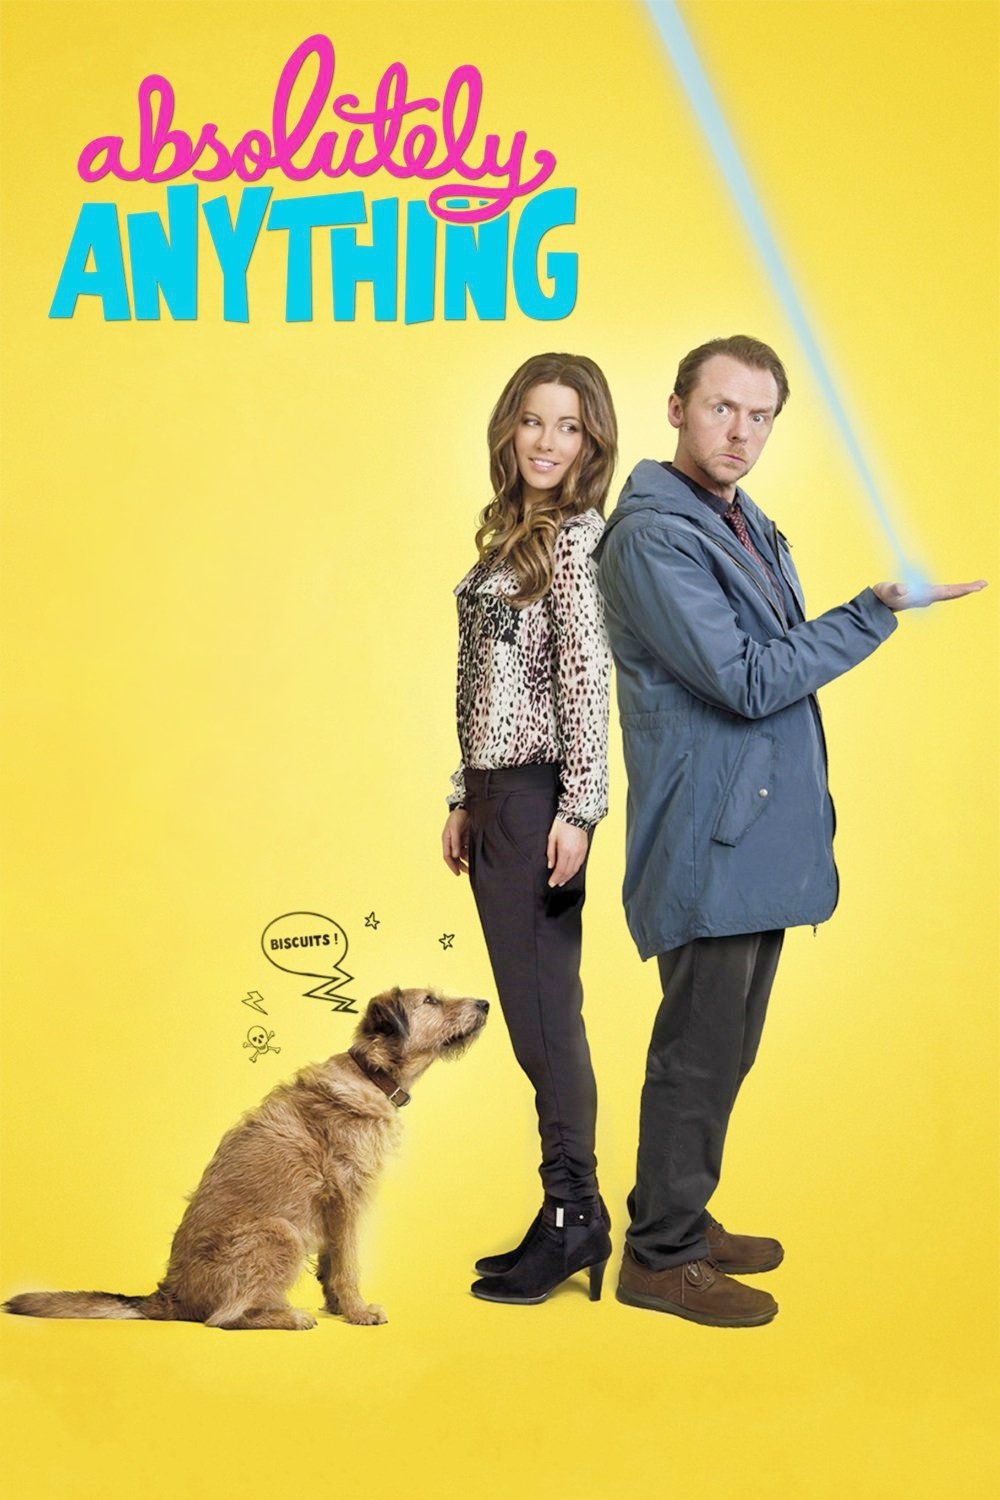 Все могу. Absolutely anything (2015) Постер. Фильм все могу. Всё могу Постер. Все могу фильм 2015.